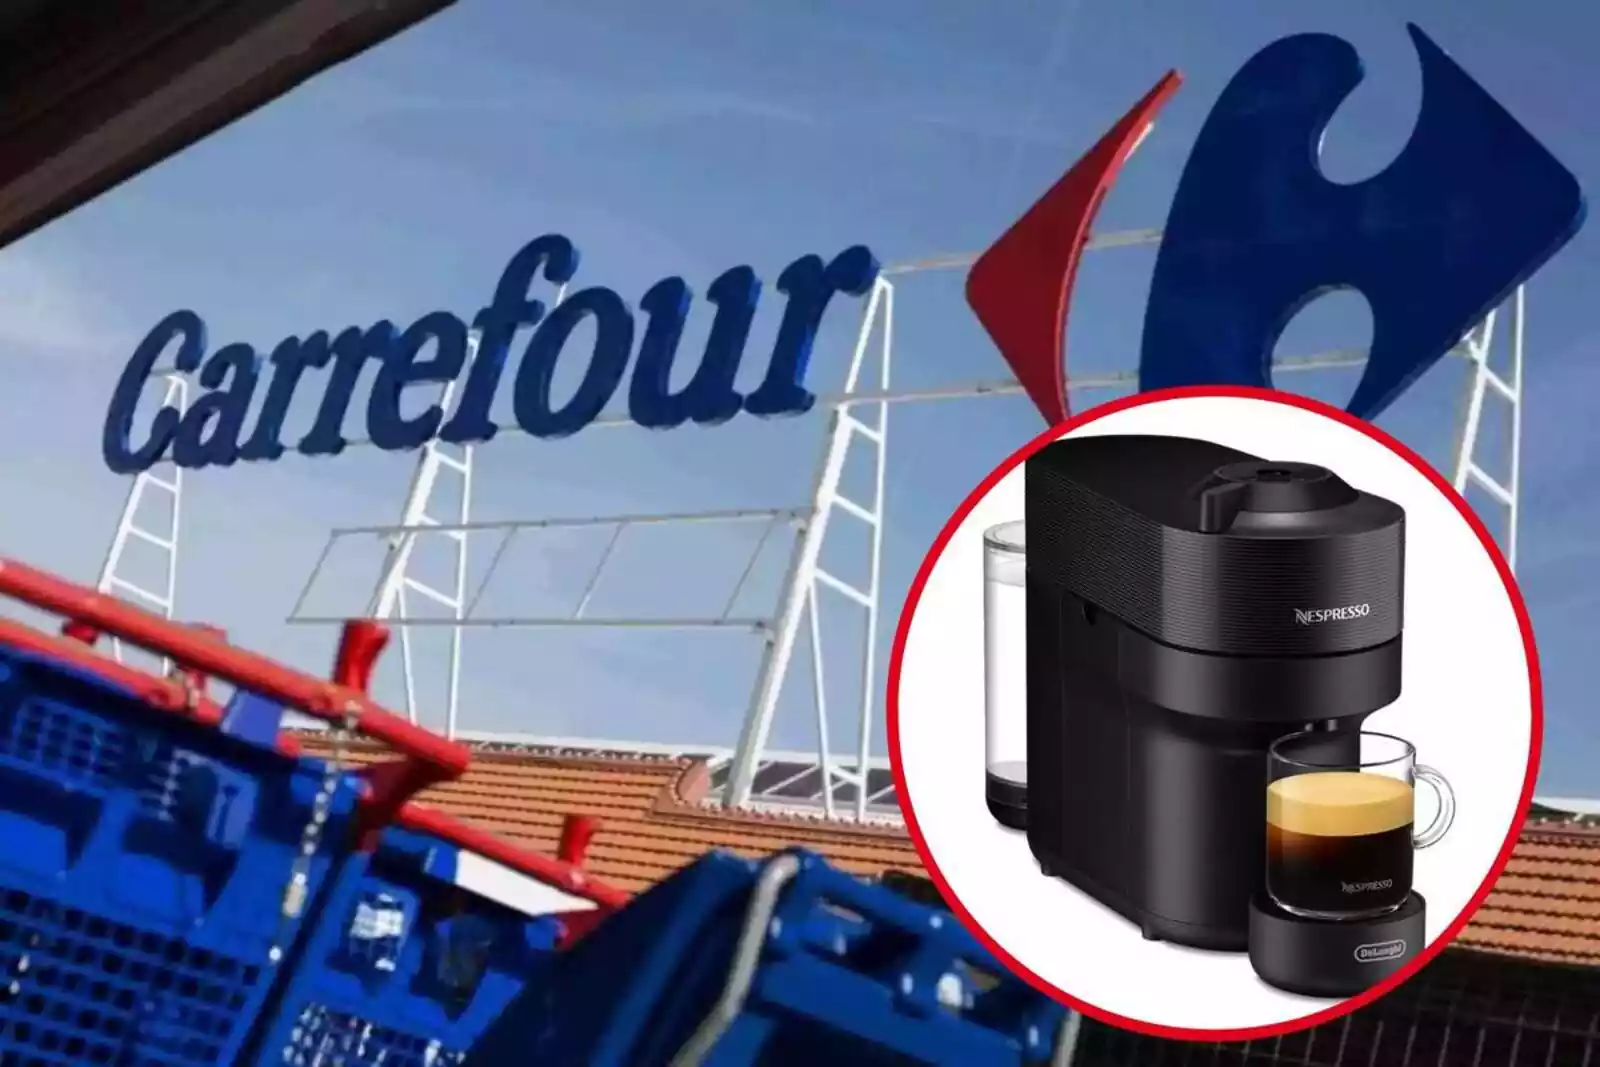 Carrefour iguala el precio de esta cafetera Nespresso barata a otras  tiendas pero te regala el 20% en un ChequeAhorro